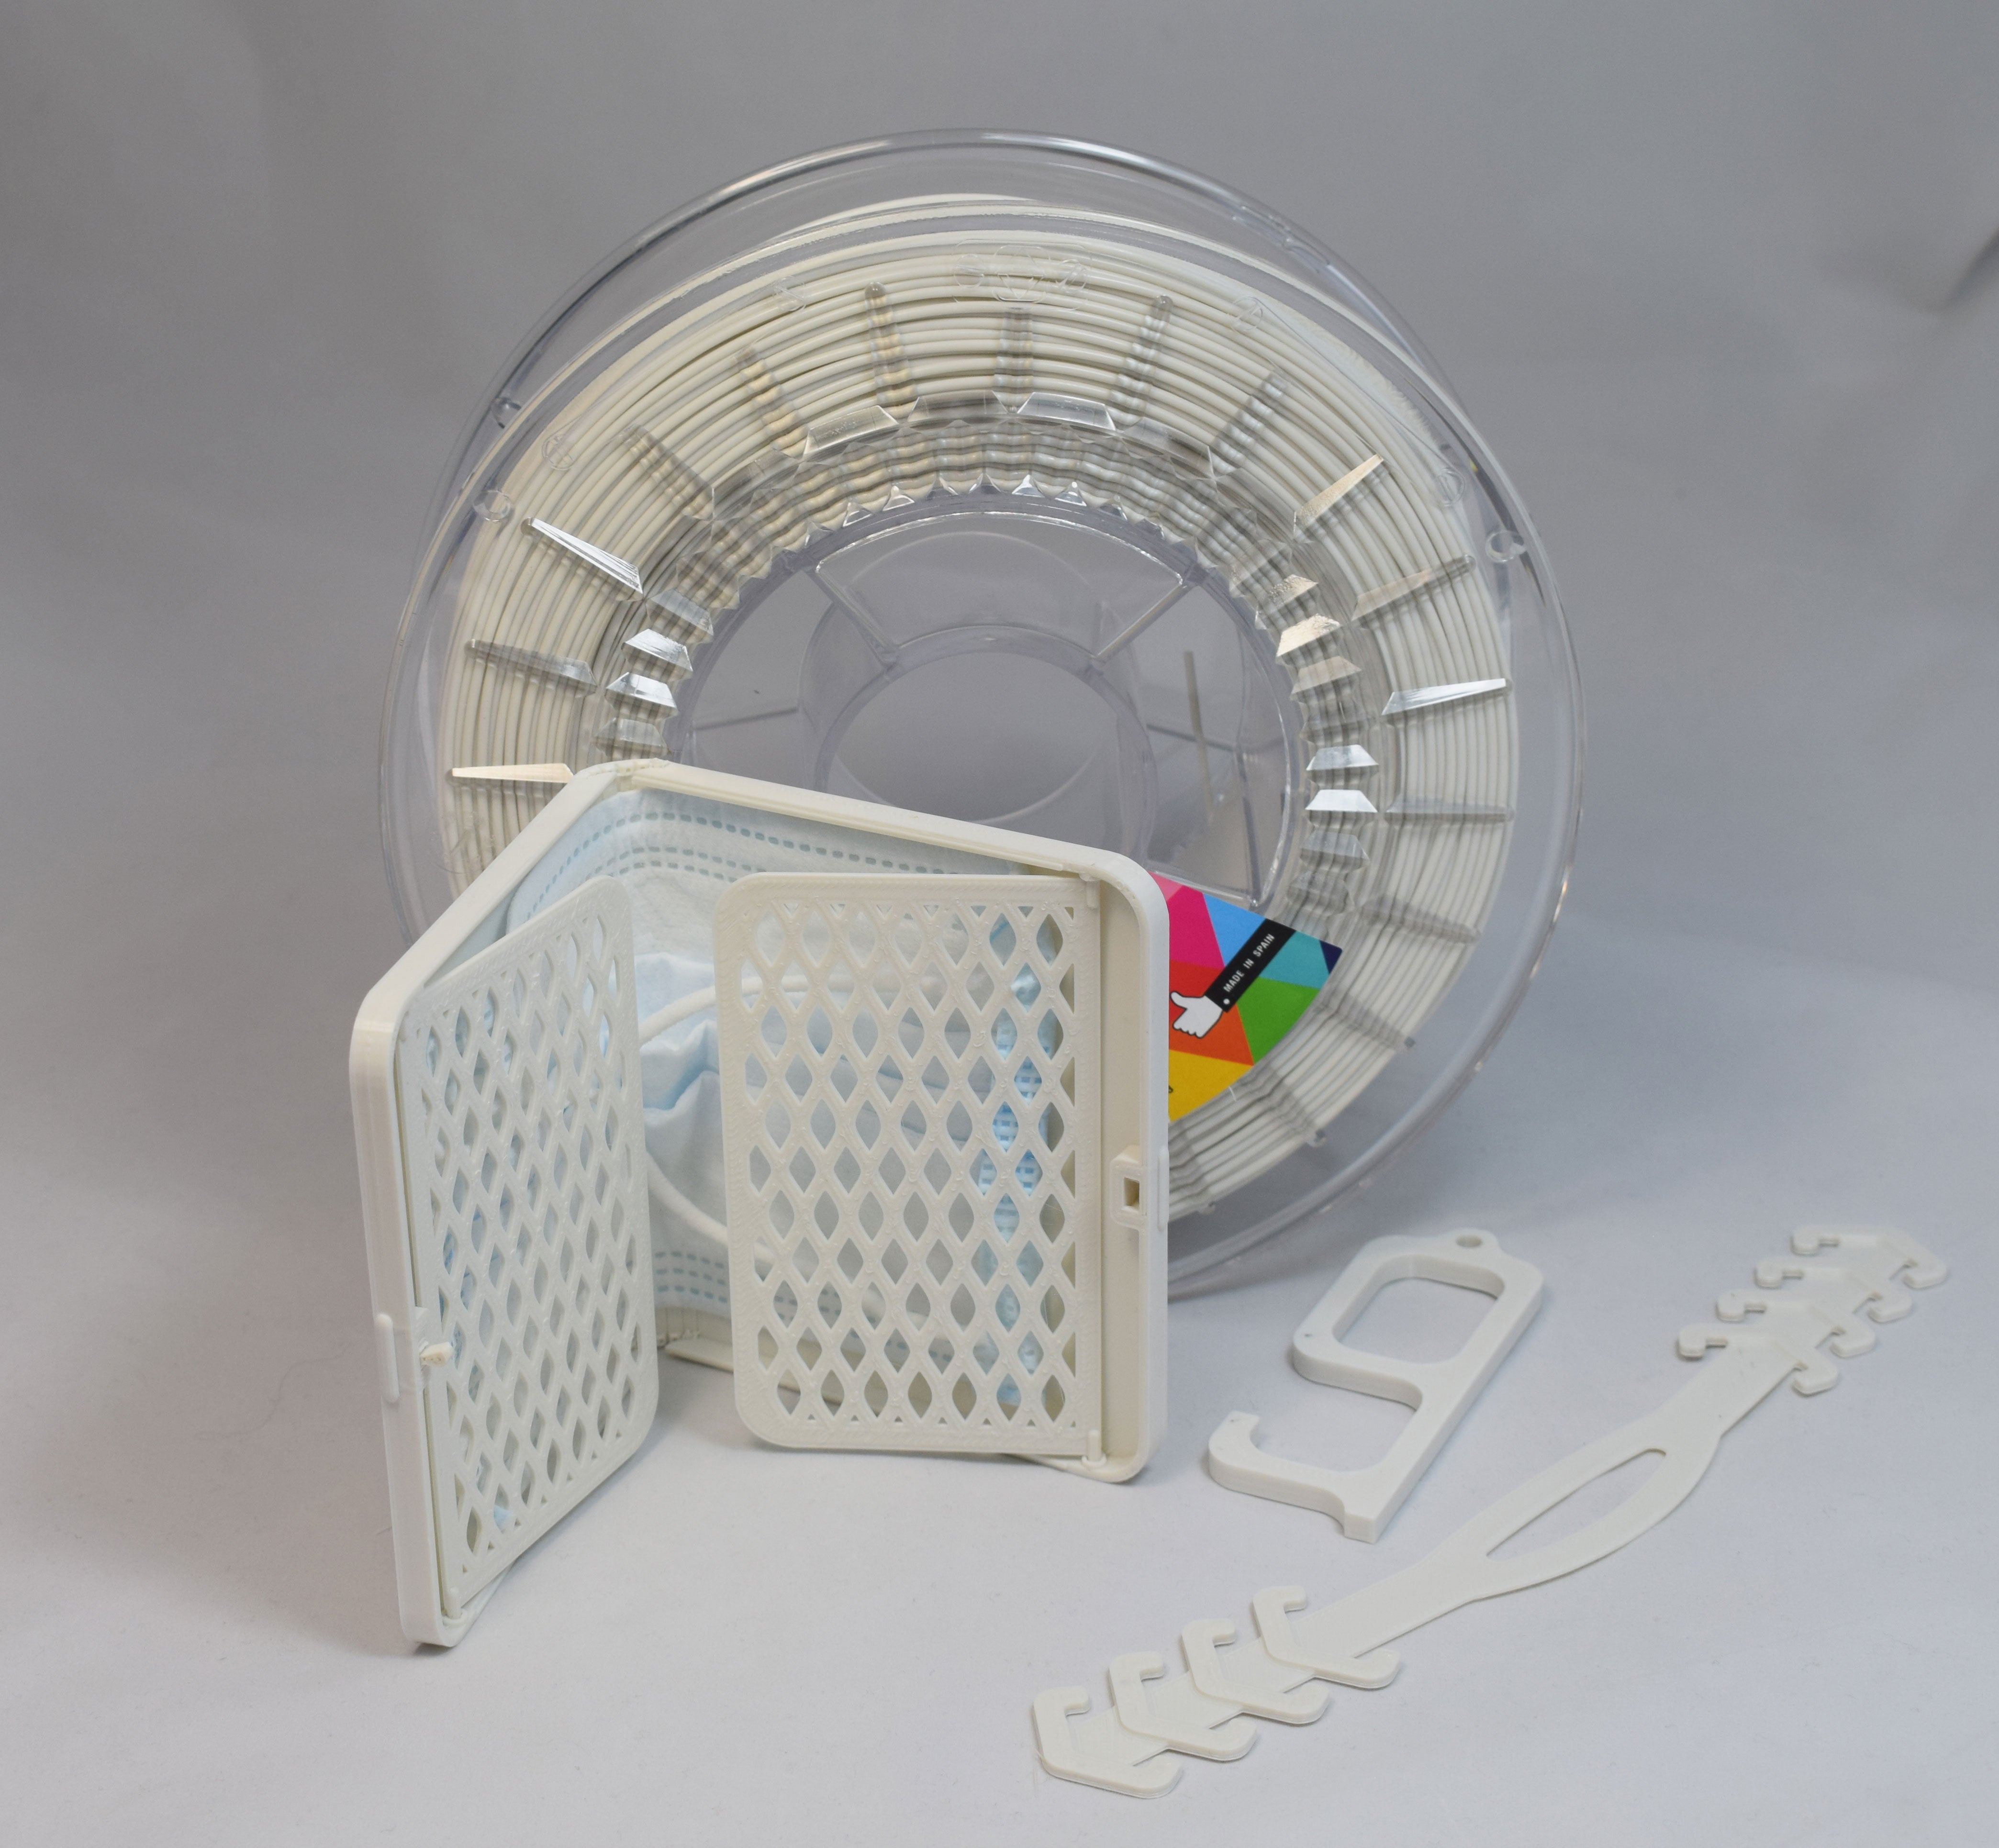 ▷ Filamento antibacterial para laboratorios (750g) Smartfil para impresora 3D certificado